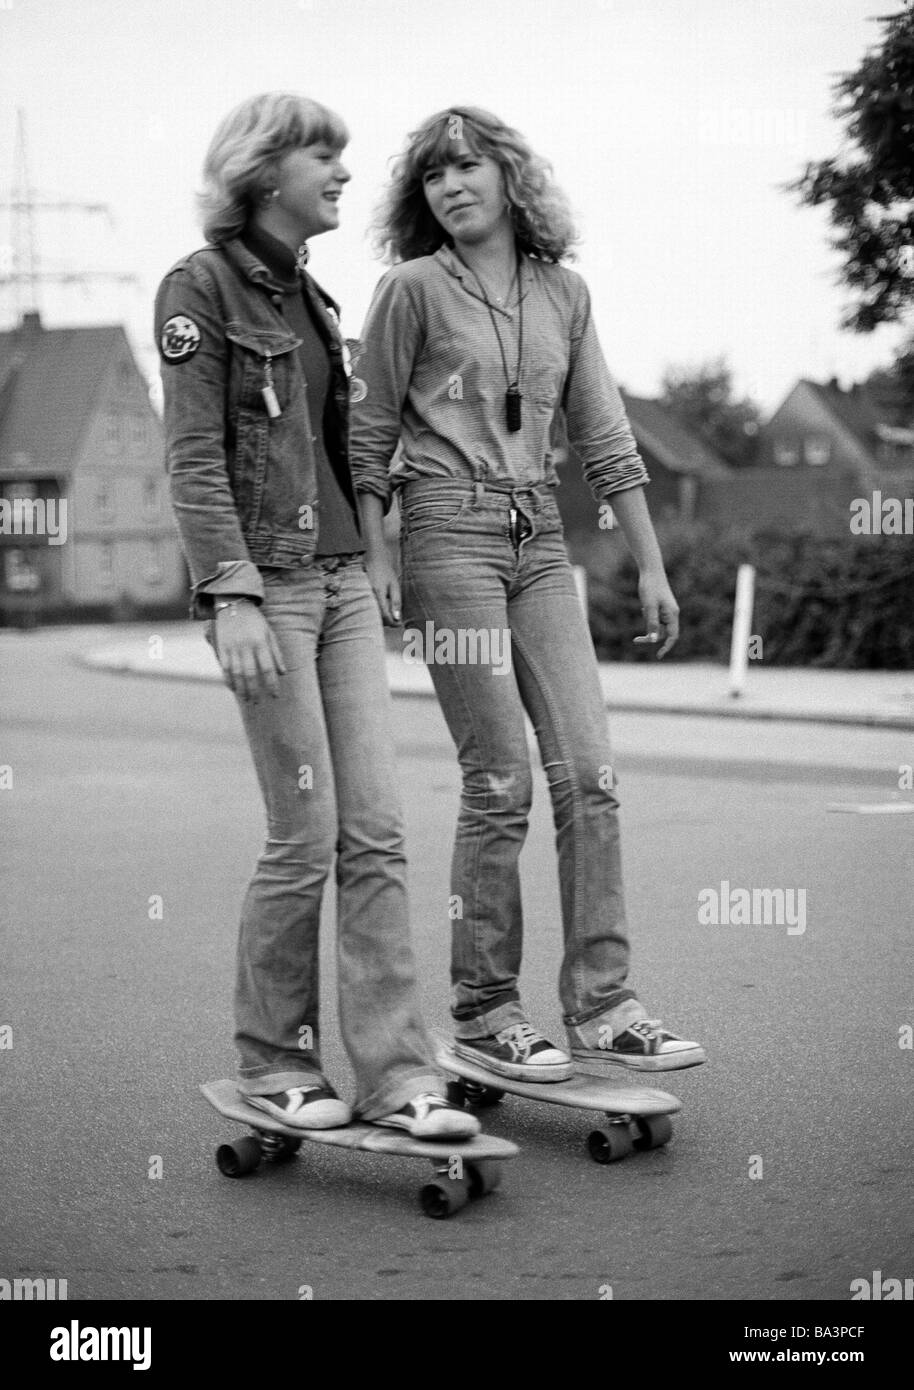 Negli anni settanta, foto in bianco e nero, persone, due giovani ragazze con i pattini guidare su strada, jeans tuta, jeans pantaloni, di età compresa tra 15 a 18 anni Foto Stock